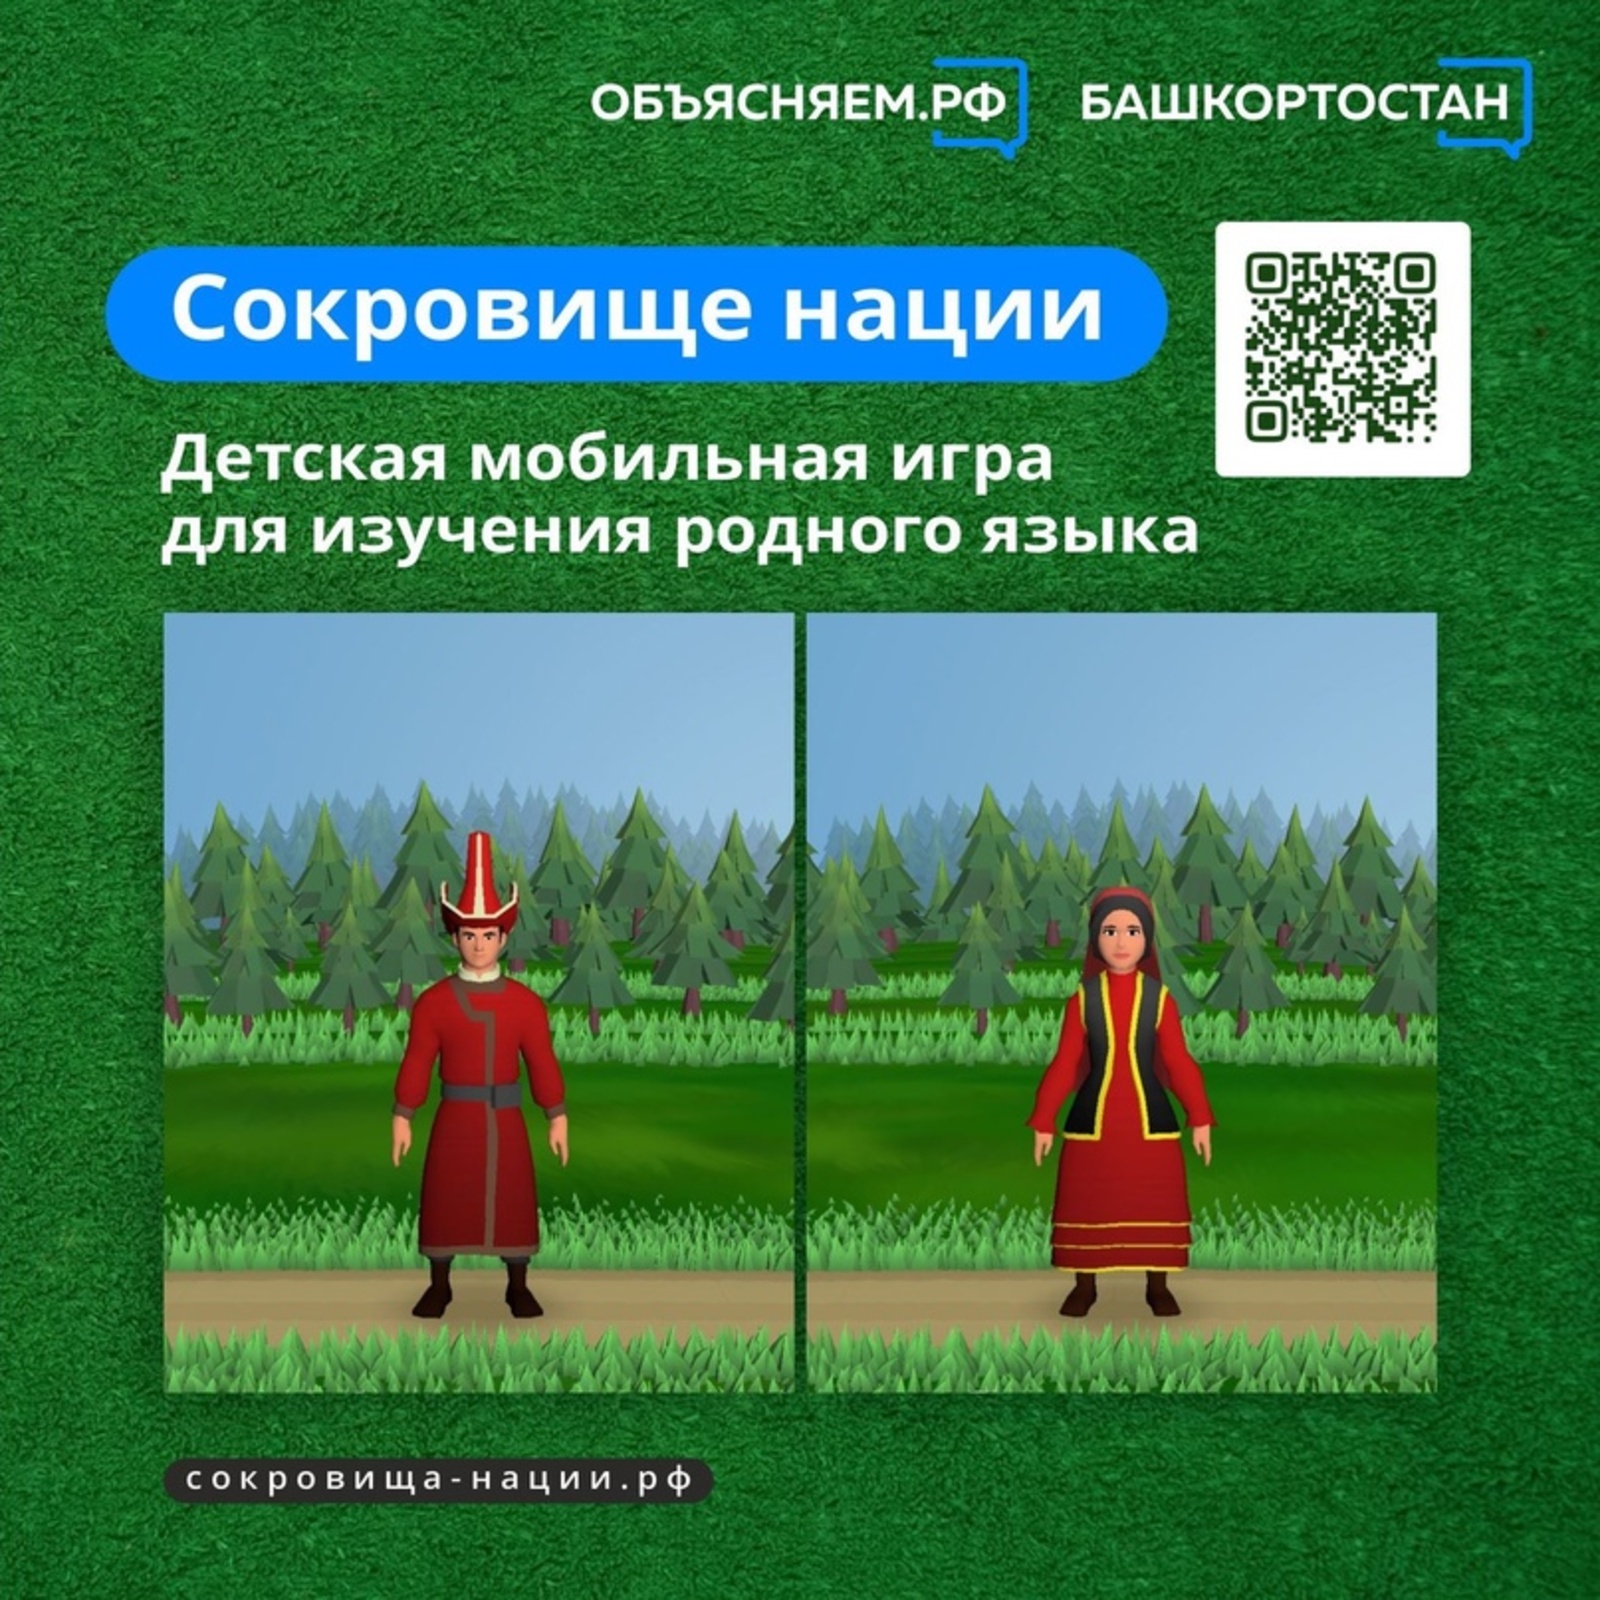 Объясняем. Башкортостан, пост: «Сокровище нации» – бесплатная мобильная игра для изучения родного языка